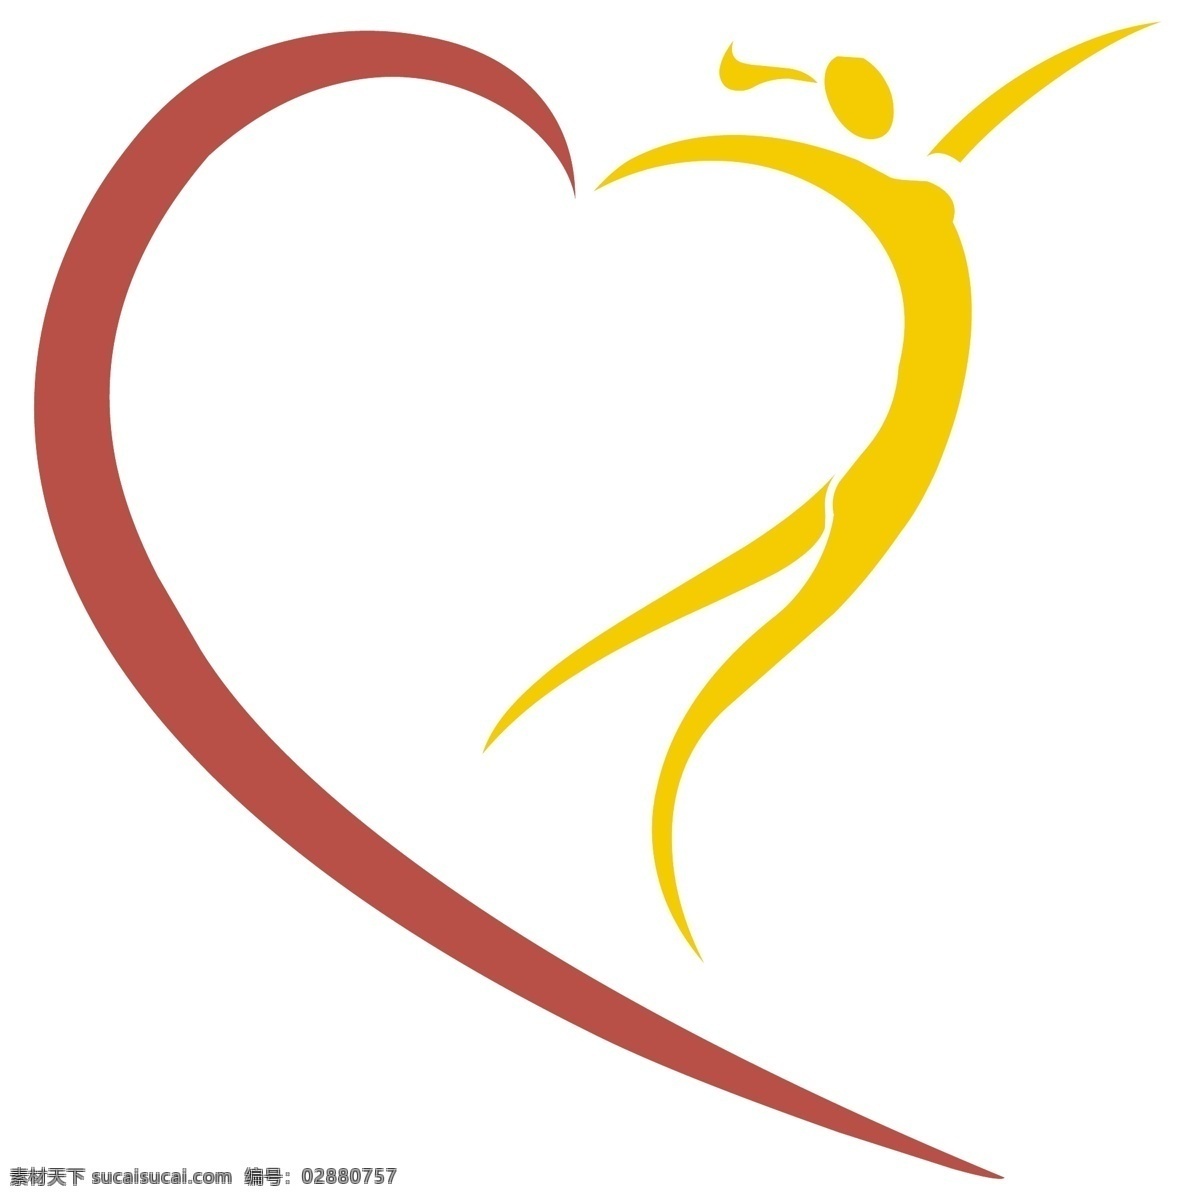 史蒂文斯 医疗保健 自由 医疗改革 标志 标识 psd源文件 logo设计